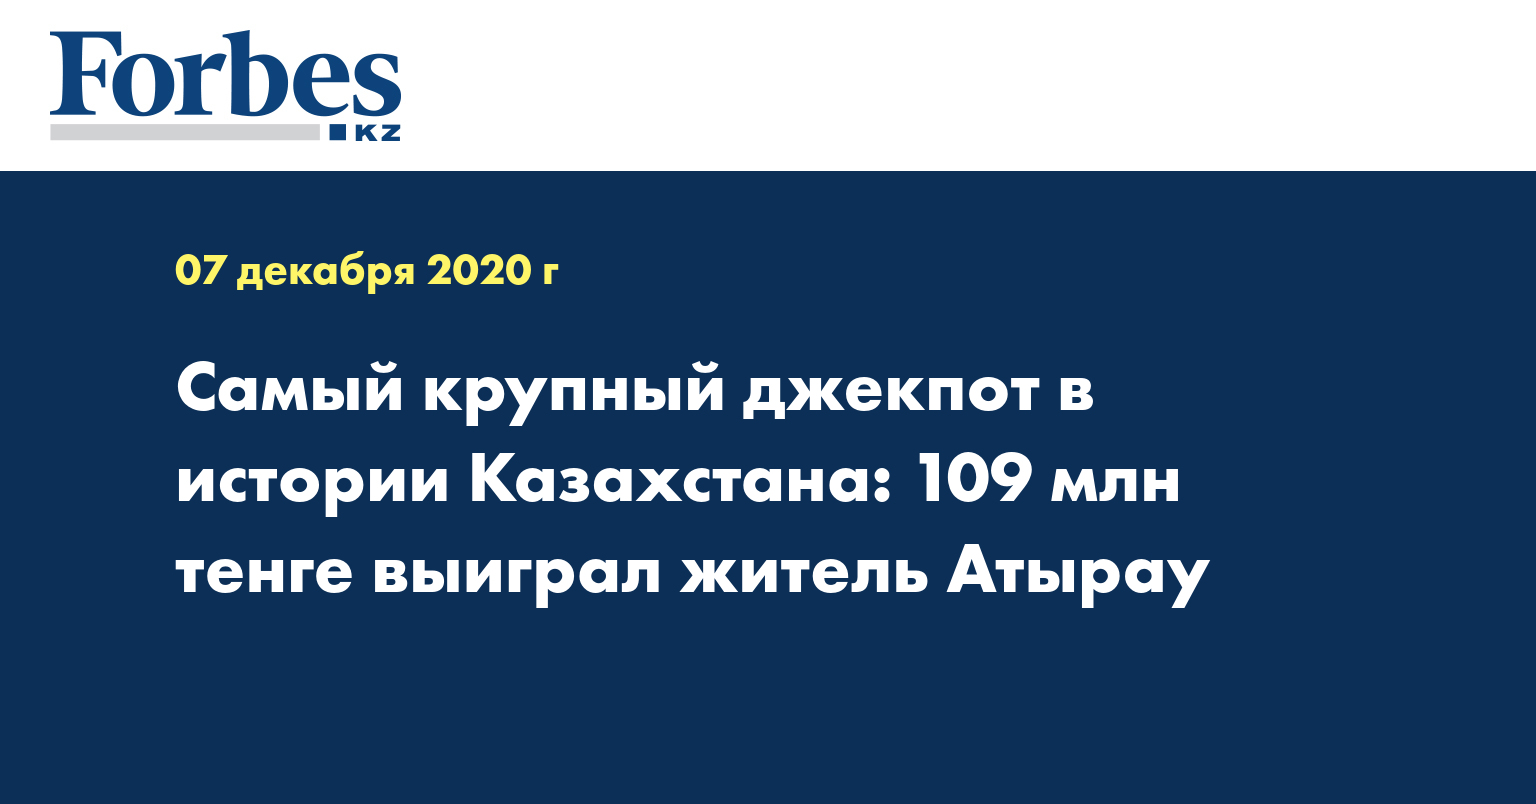 Самый крупный джекпот в истории Казахстана: 109 млн тенге выиграл житель Атырау